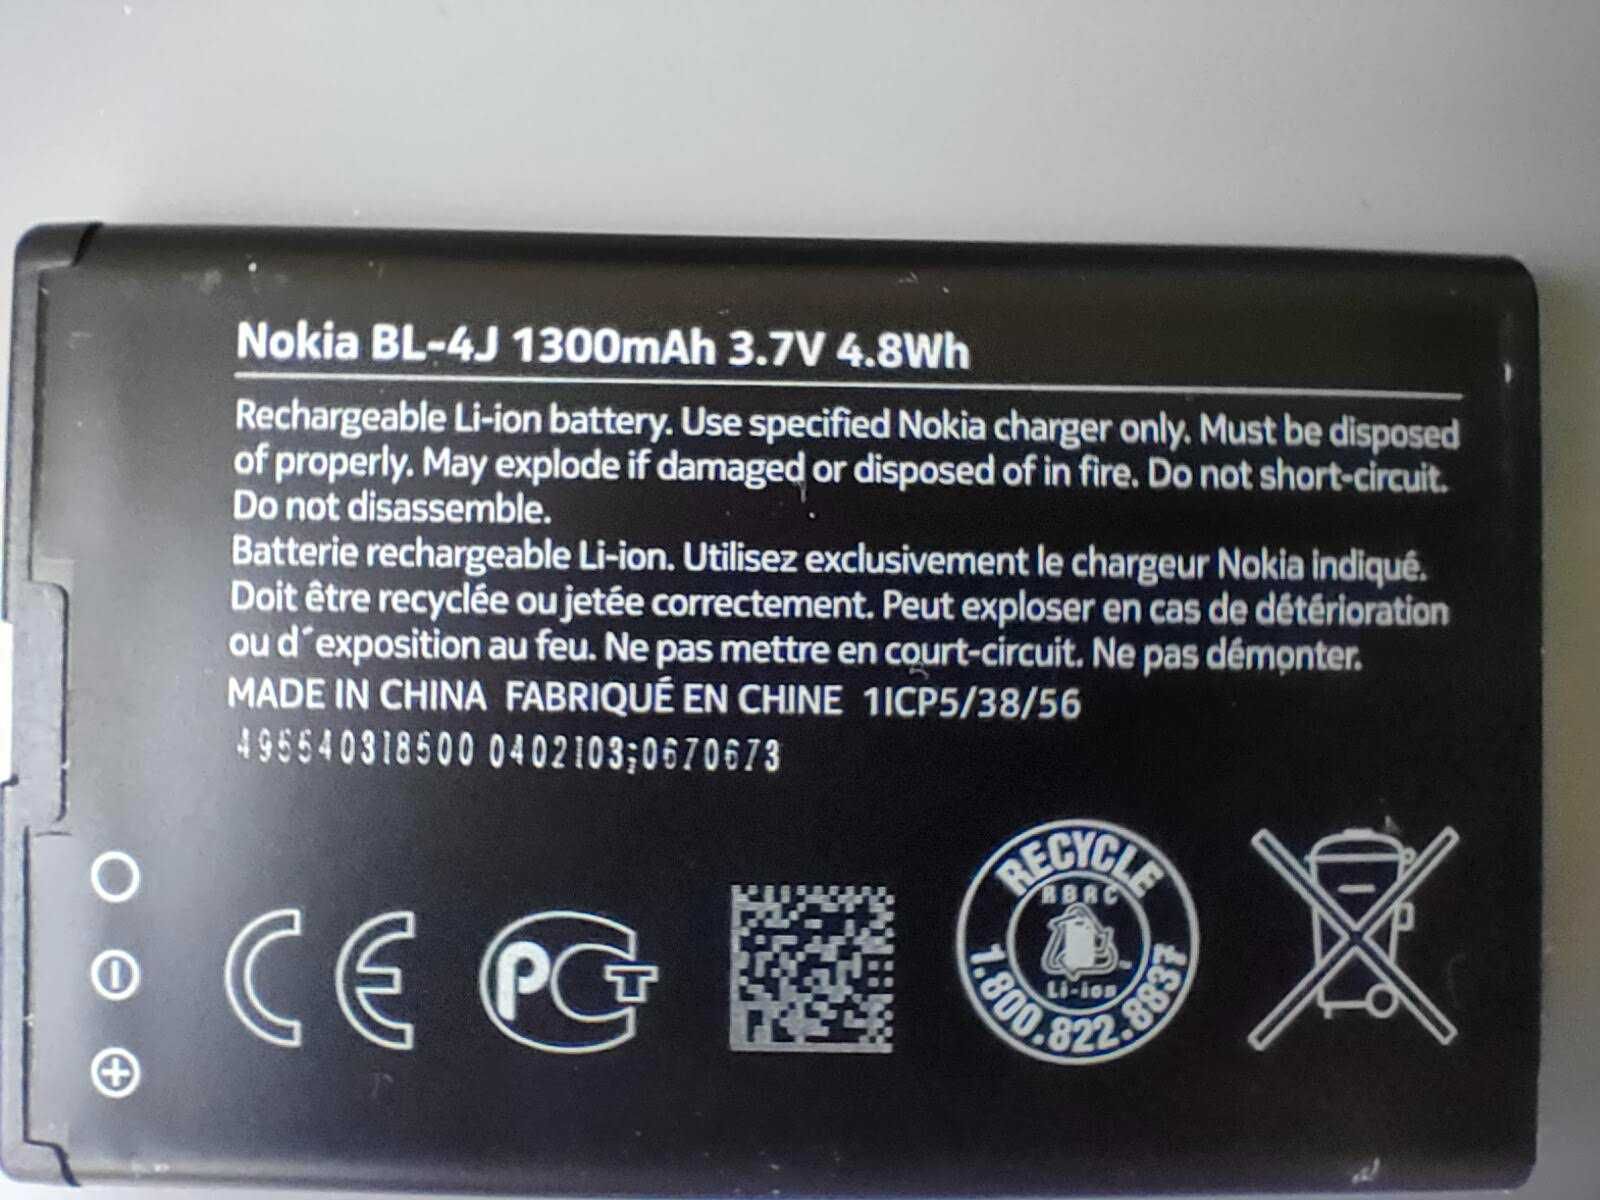 NOKIA Lumia 620 (uszkodzony)